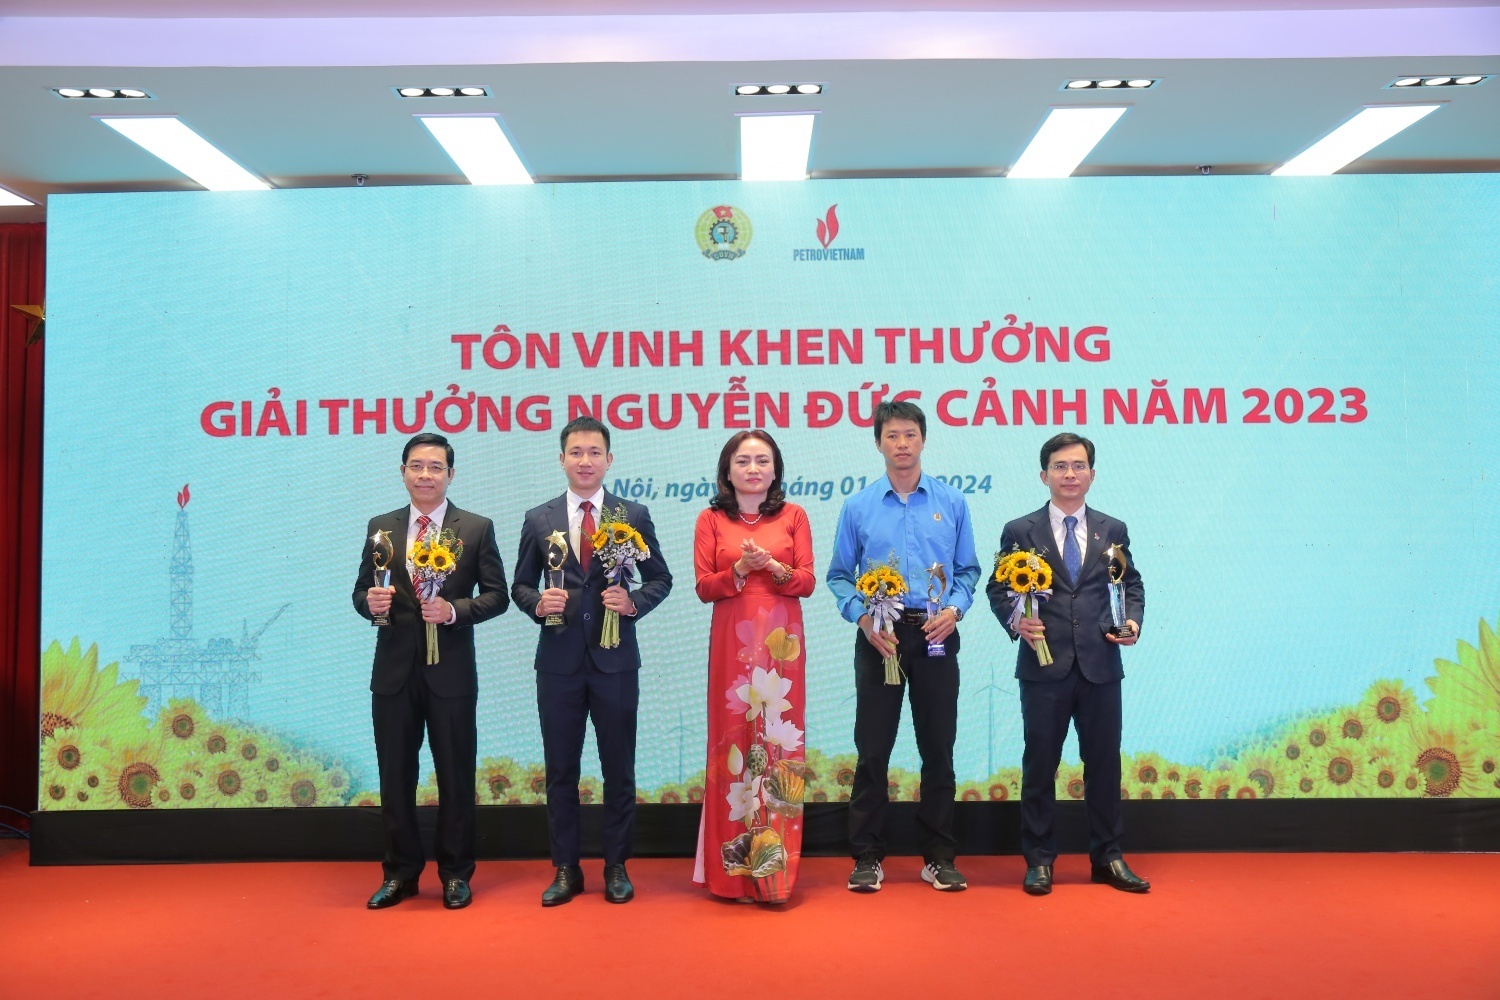 Hình 3. Đồng chí Trần Anh Khoa nhận Giải thưởng Nguyễn Đức Cảnh